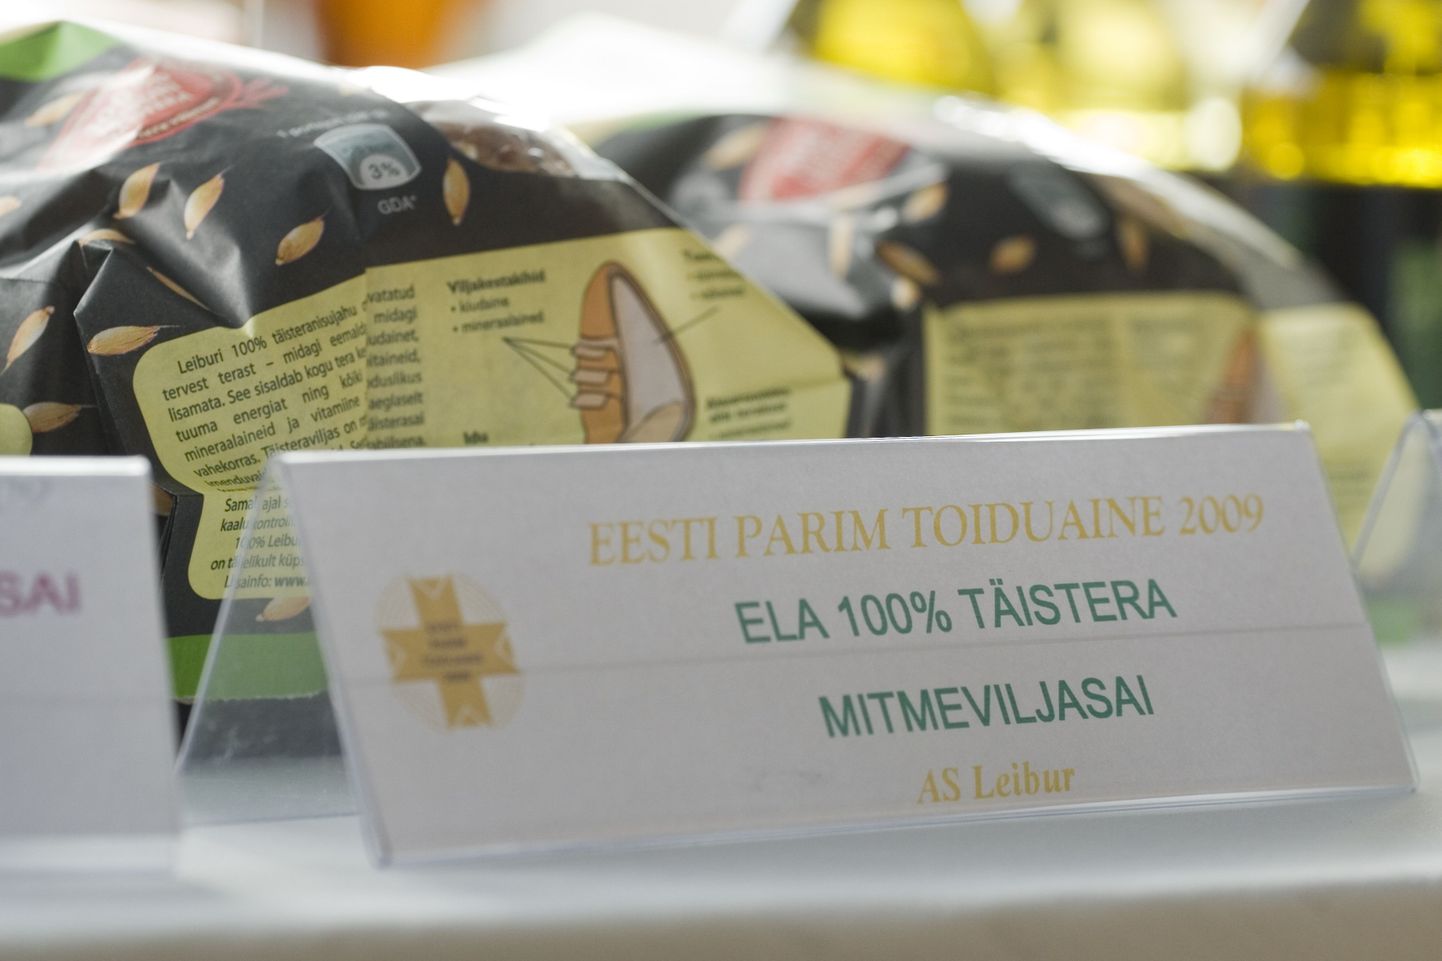 Aprillis selgub taas Eesti parim toiduaine. Pildil mullune võitja Ela mitmeviljasai.